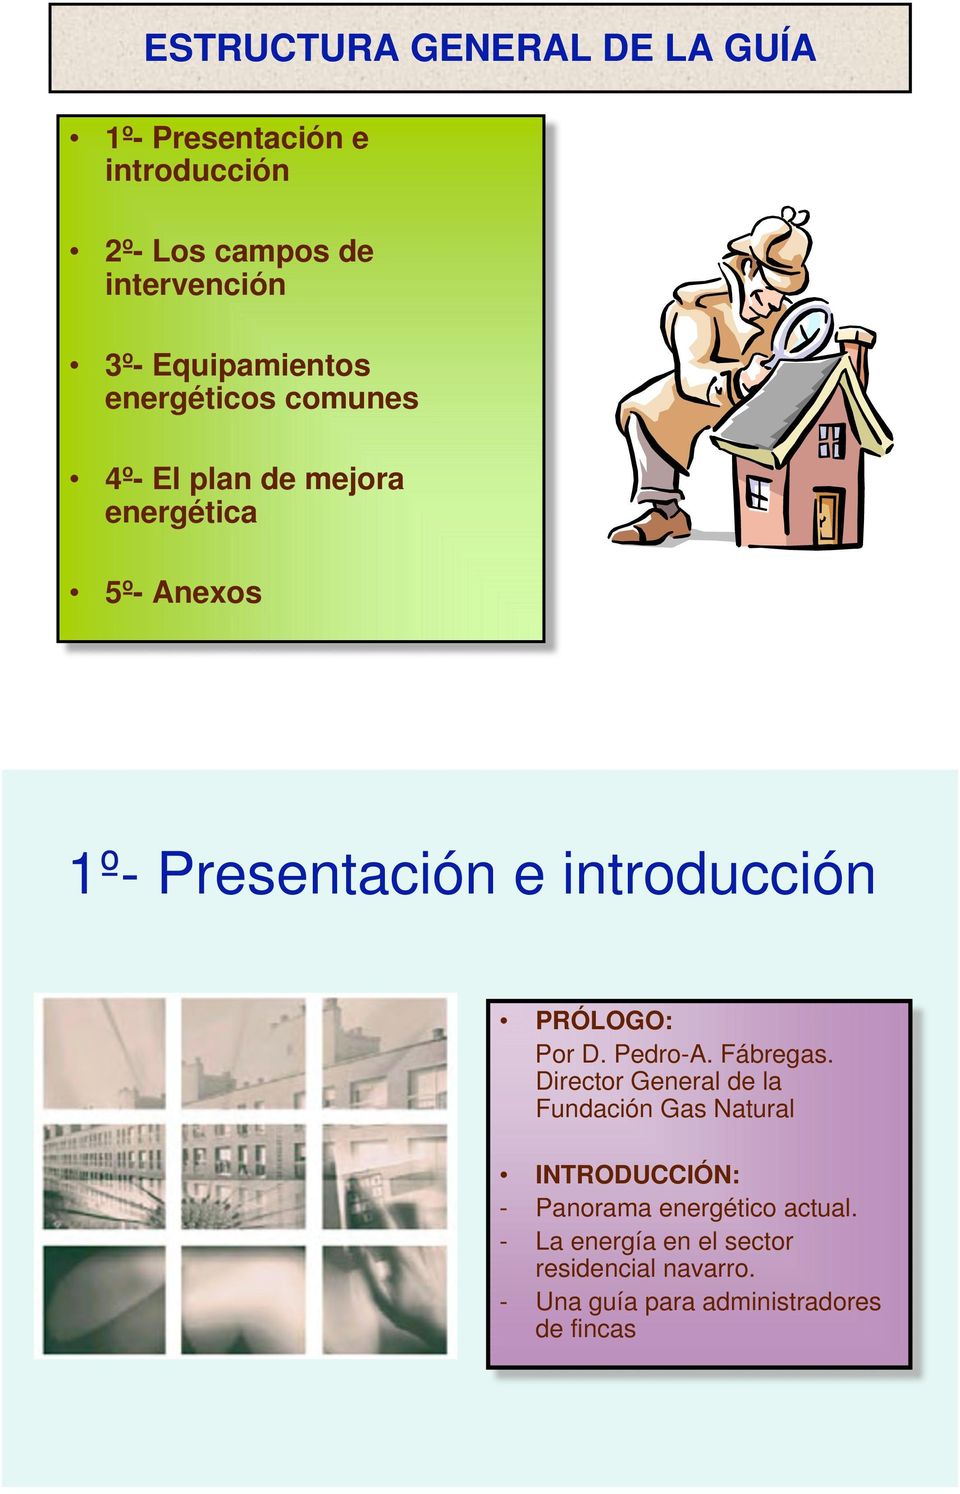 introducción PRÓLOGO: Por D. Pedro-A. Fábregas.